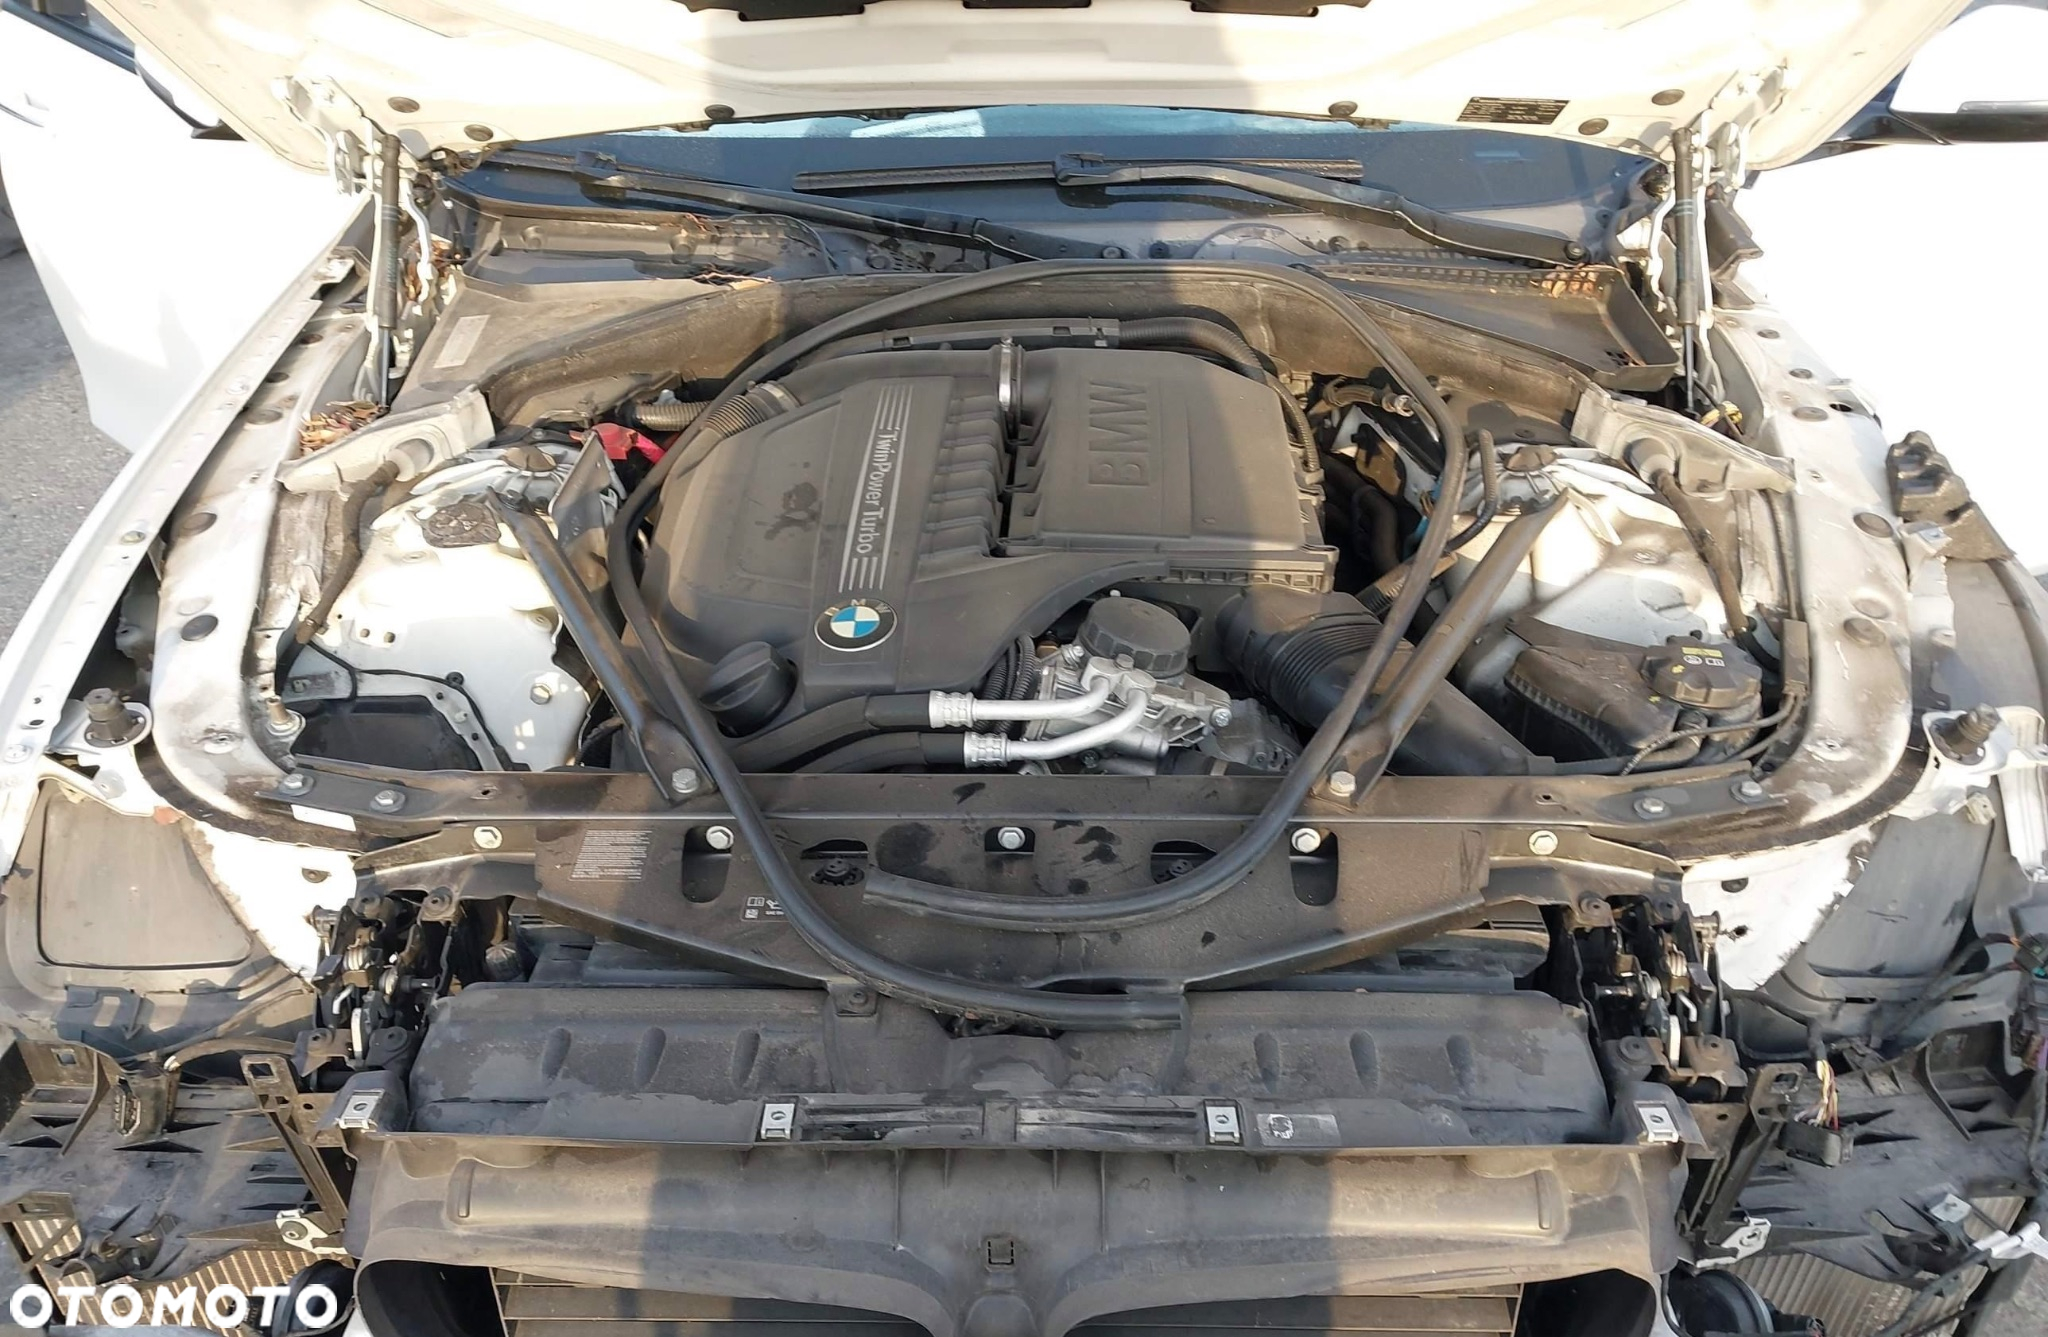 BMW Seria 5 - 10